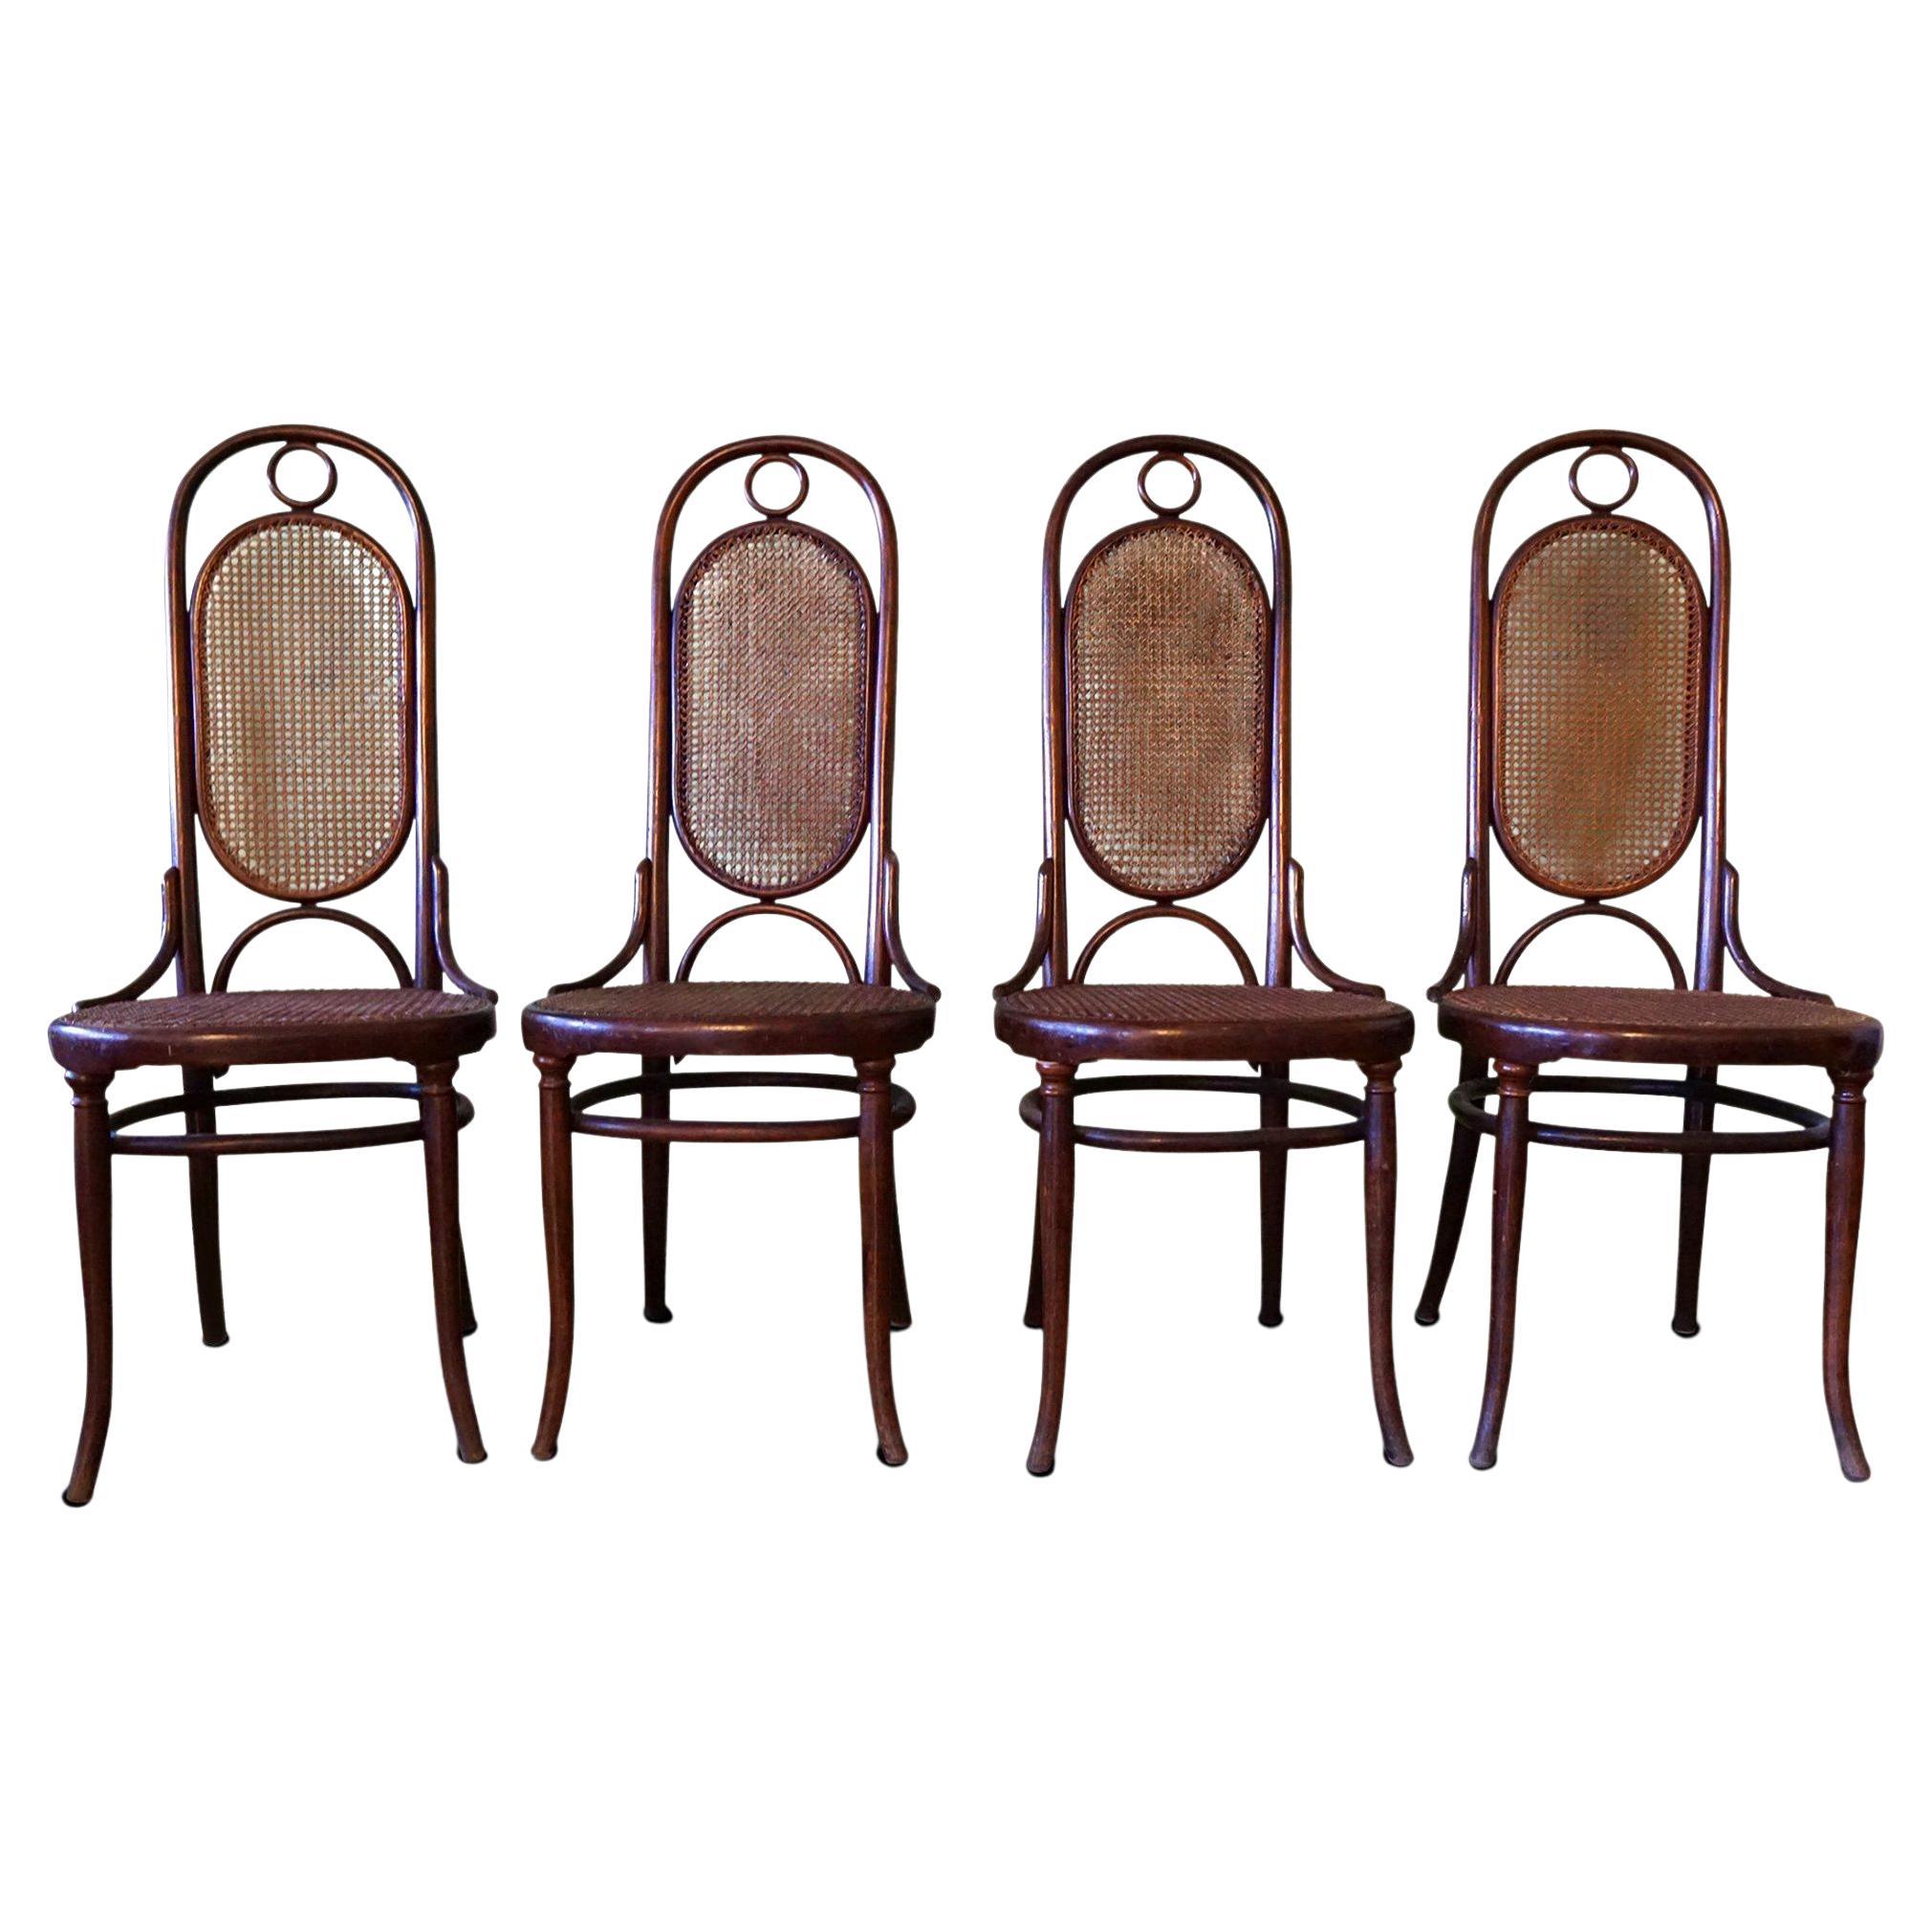 4 chaises originales Tonet